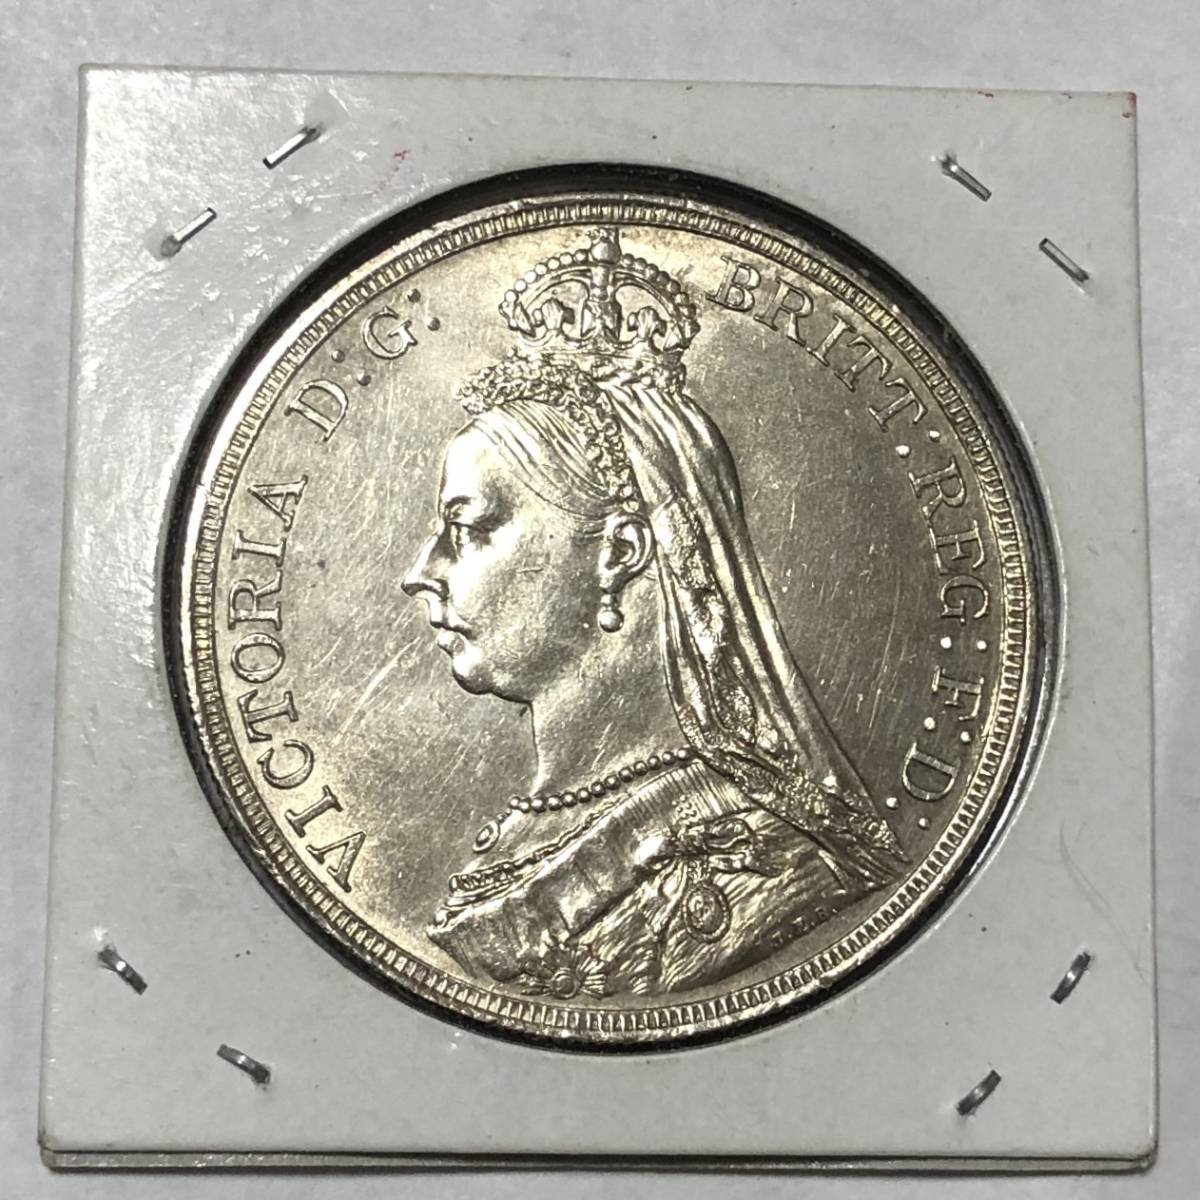  原文:イギリス 1887年 ヴィクトリア女王 大型銀貨 未使用